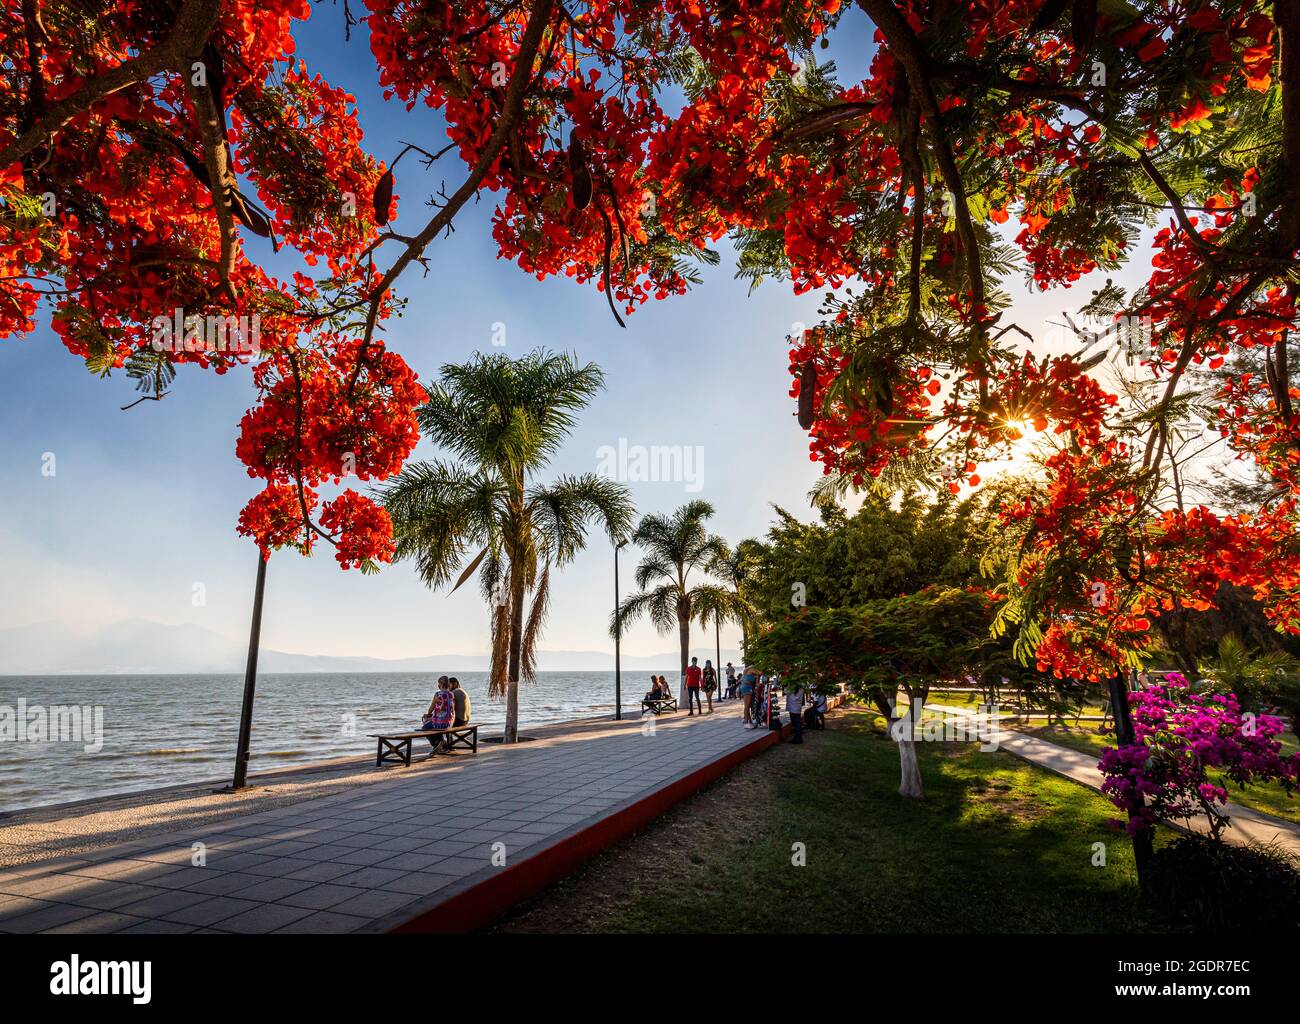 Un árbol de Tabachin, también llamado Royal Poinciana (Delonix regia), enmarca el paseo marítimo del lago Chapala en Ajijic, Jalisco, México. Foto de stock